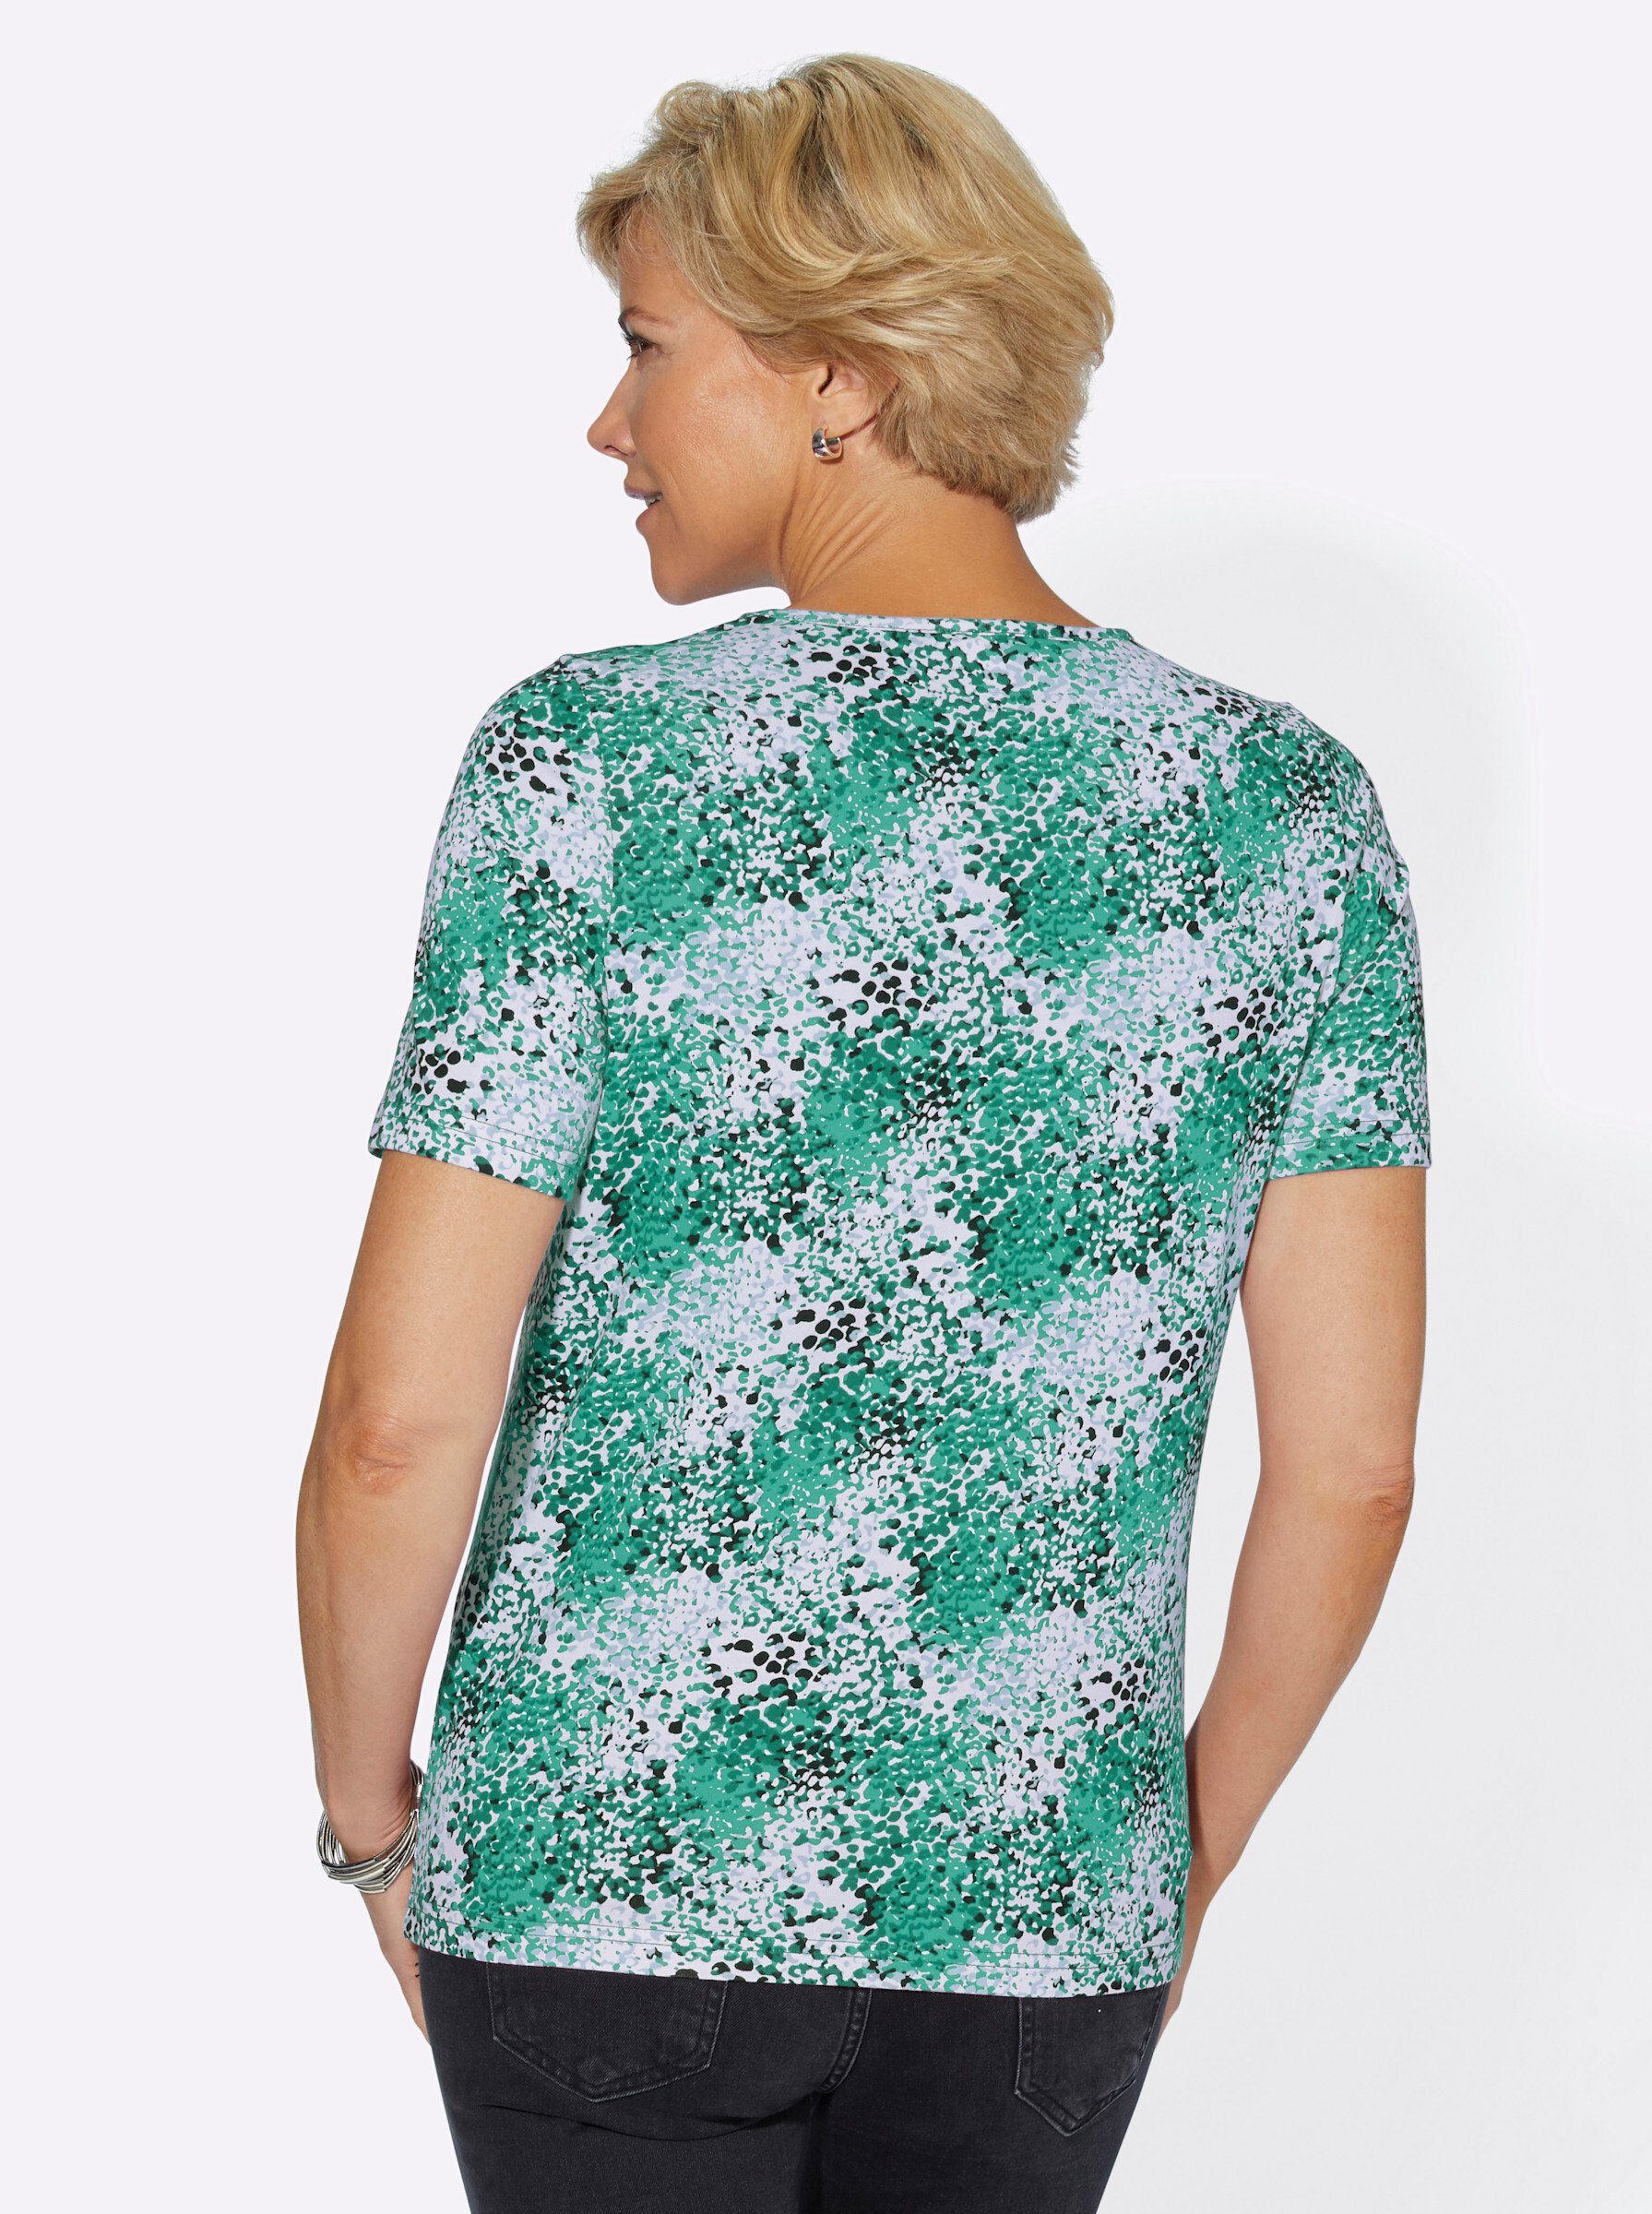 smaragd-bedruckt WEIDEN T-Shirt WITT